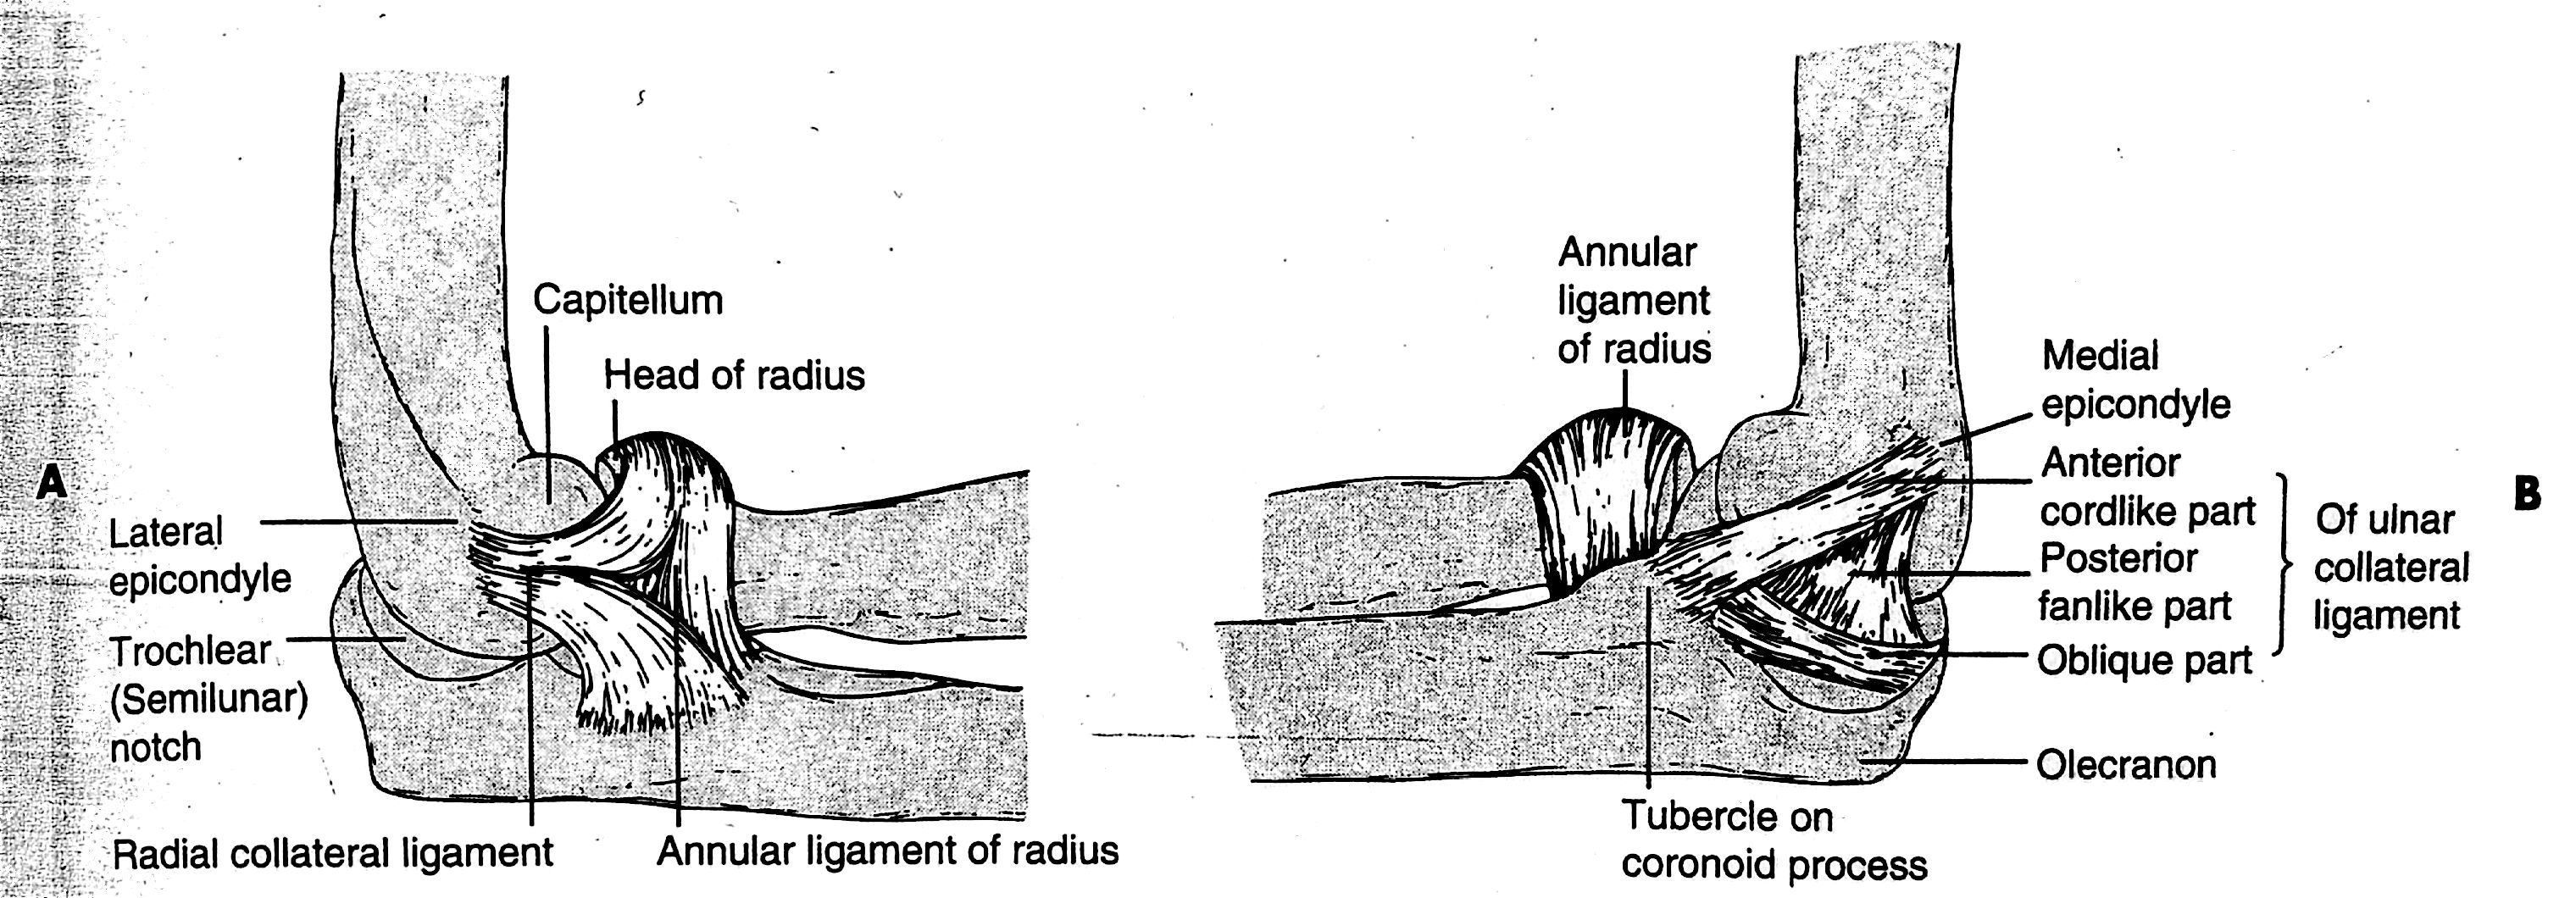 3.1.1.3 Ligamentum anulare radii Ligamentum anulare radii je složeno ze tří pruhů ligamentum olecranohumerale, ligamentum humerocoronoideum a ligamentum obliquum (Čihák, 2011).